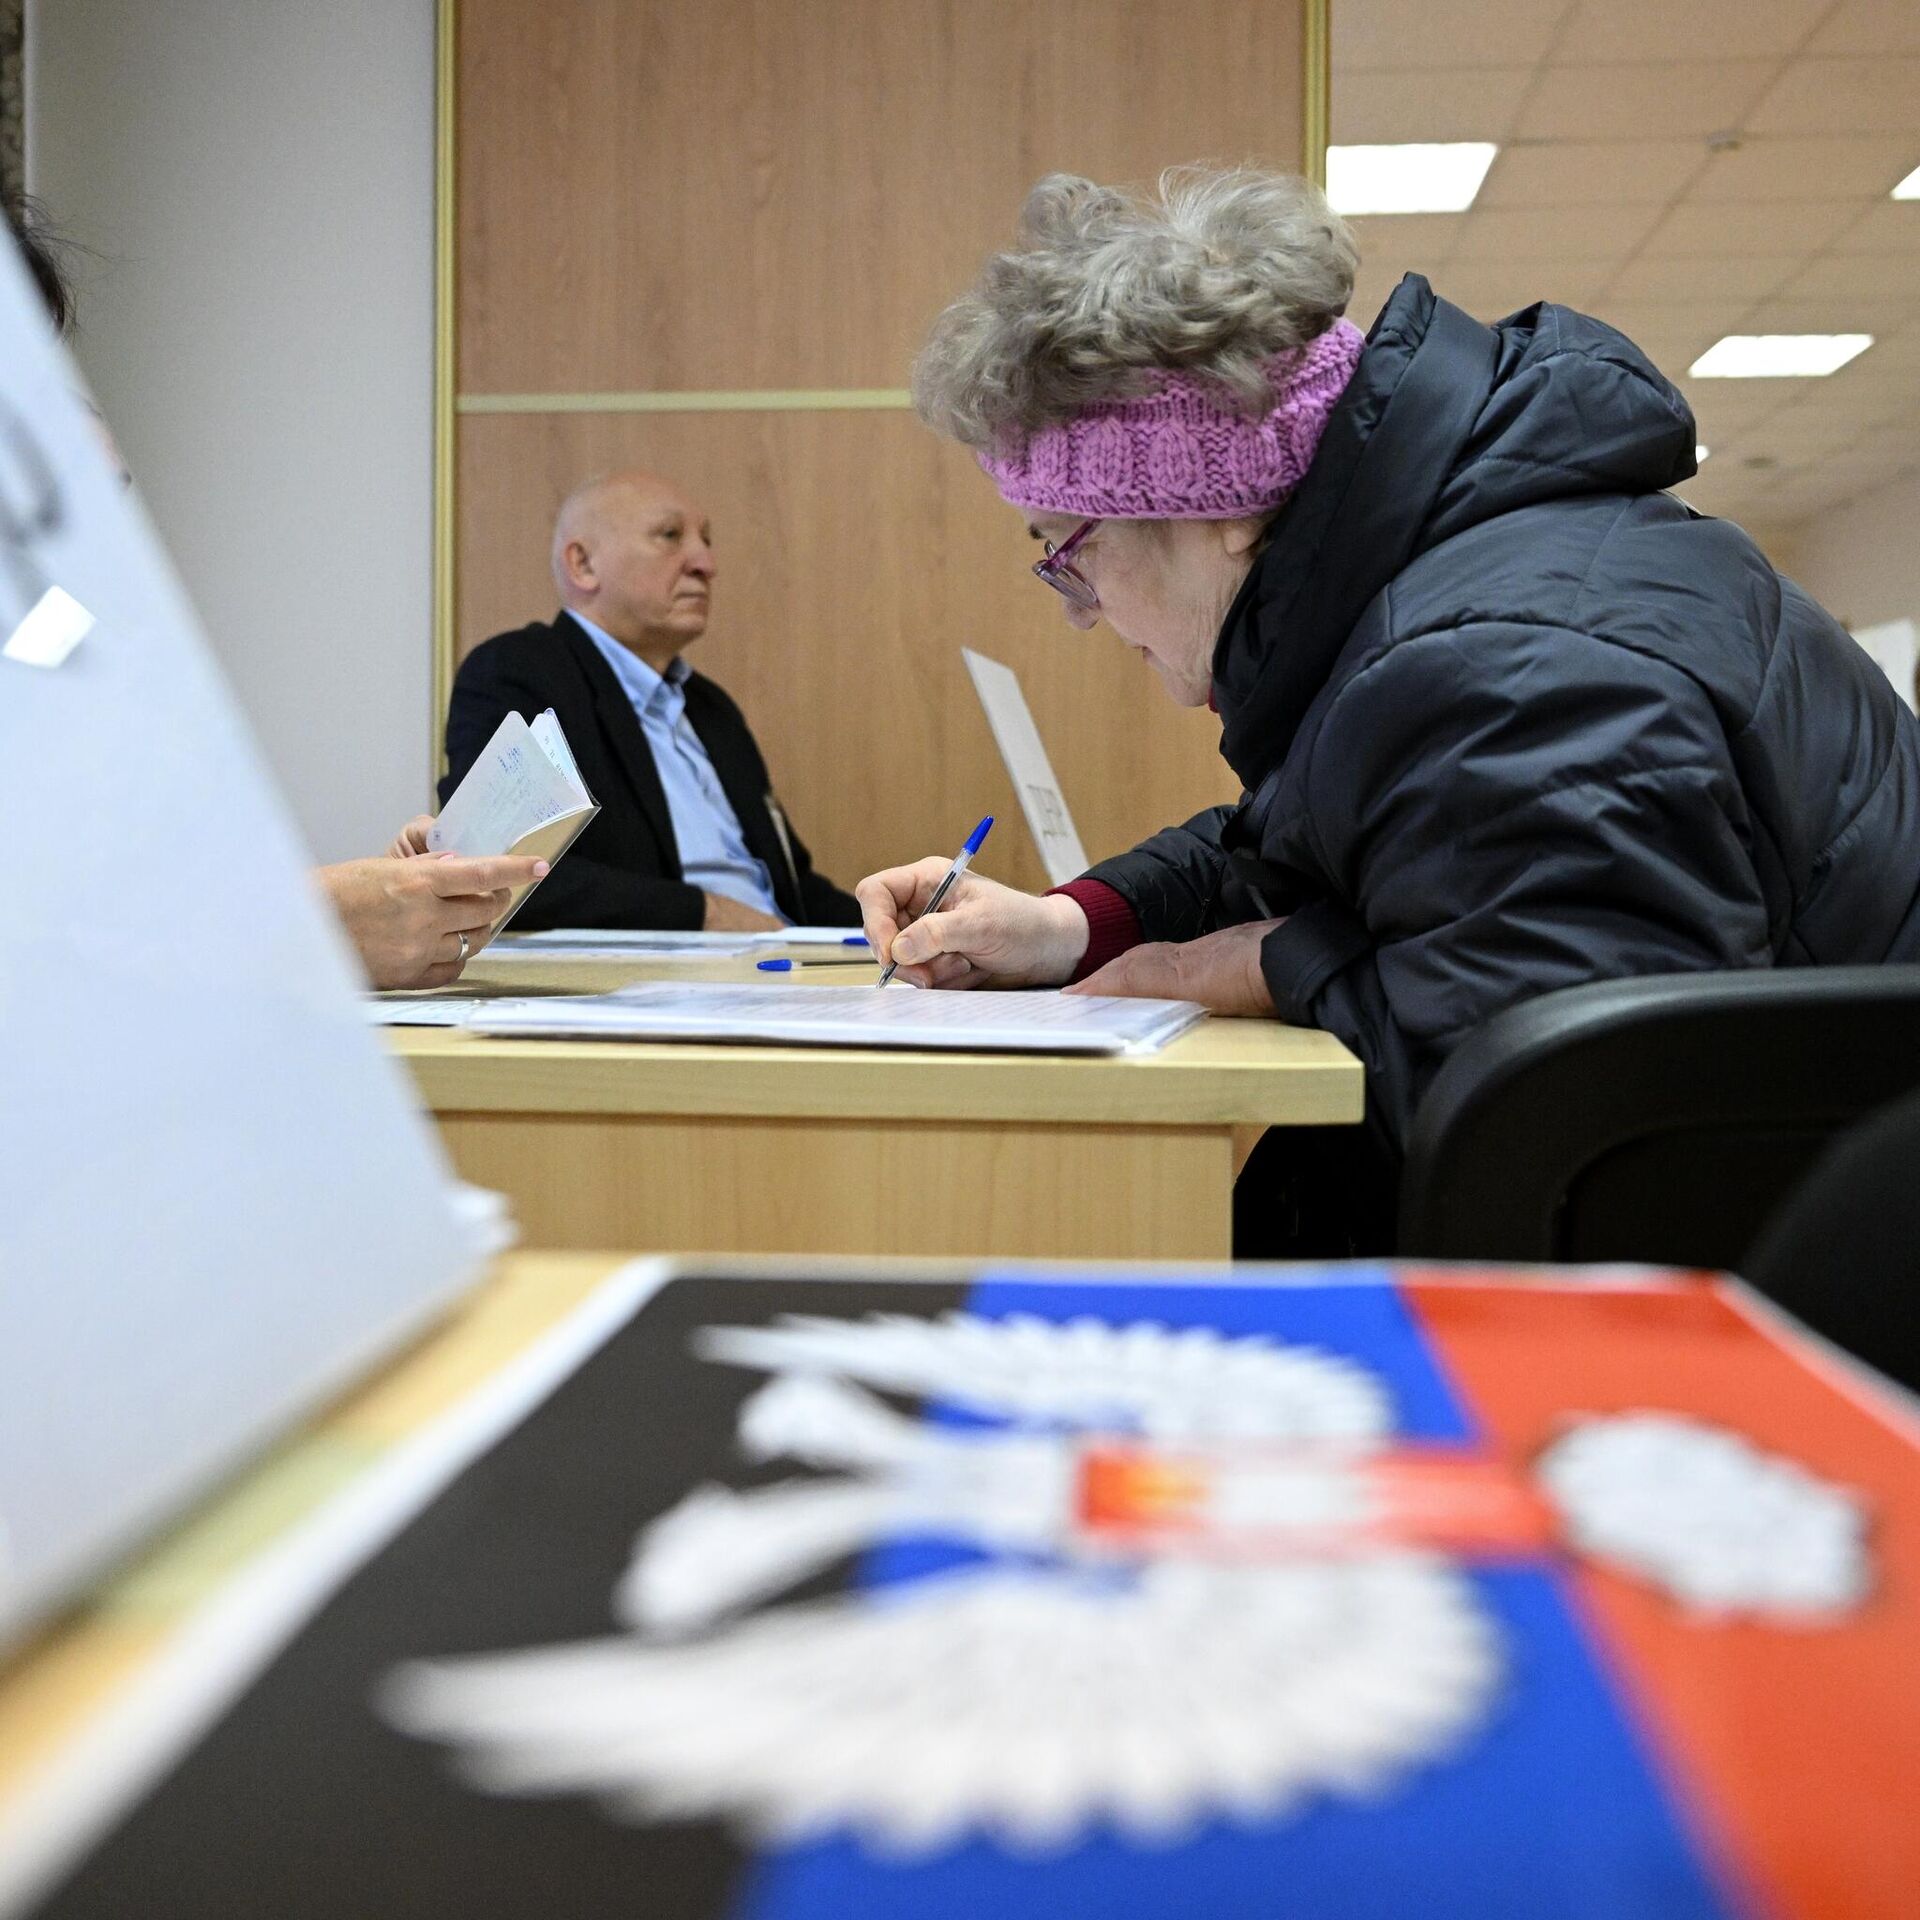 Сегодняшний день составляет более. Референдум в ЛНР И ДНР 2022. Референдум Донбасс 2022. Голосование на выборах. Явка избирателей.